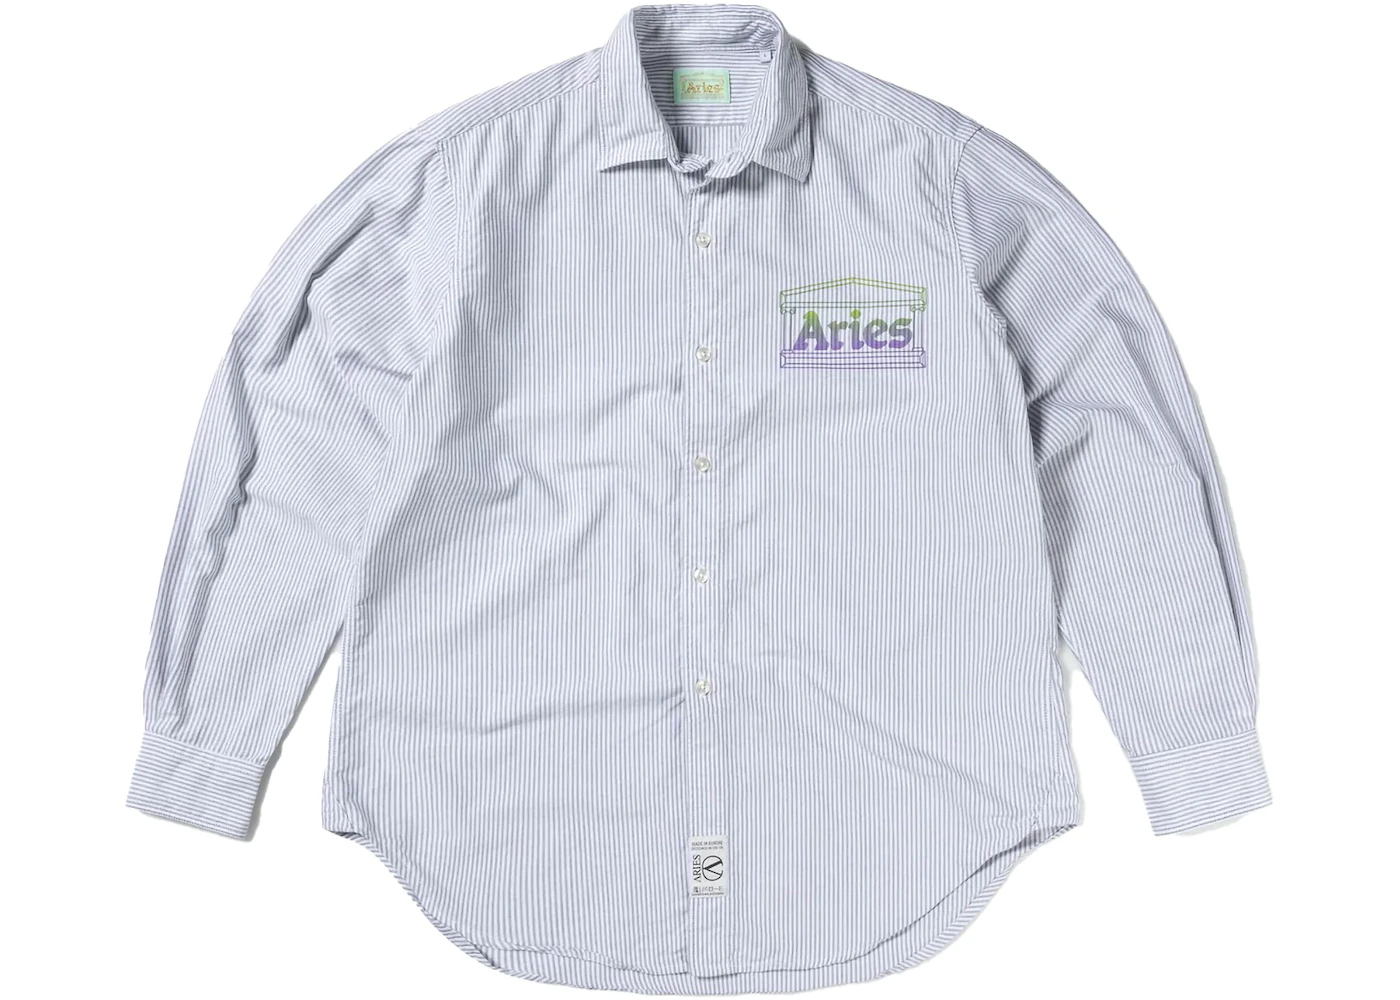 Aries Oxford Stripe Shirt Black White - FW22 - US